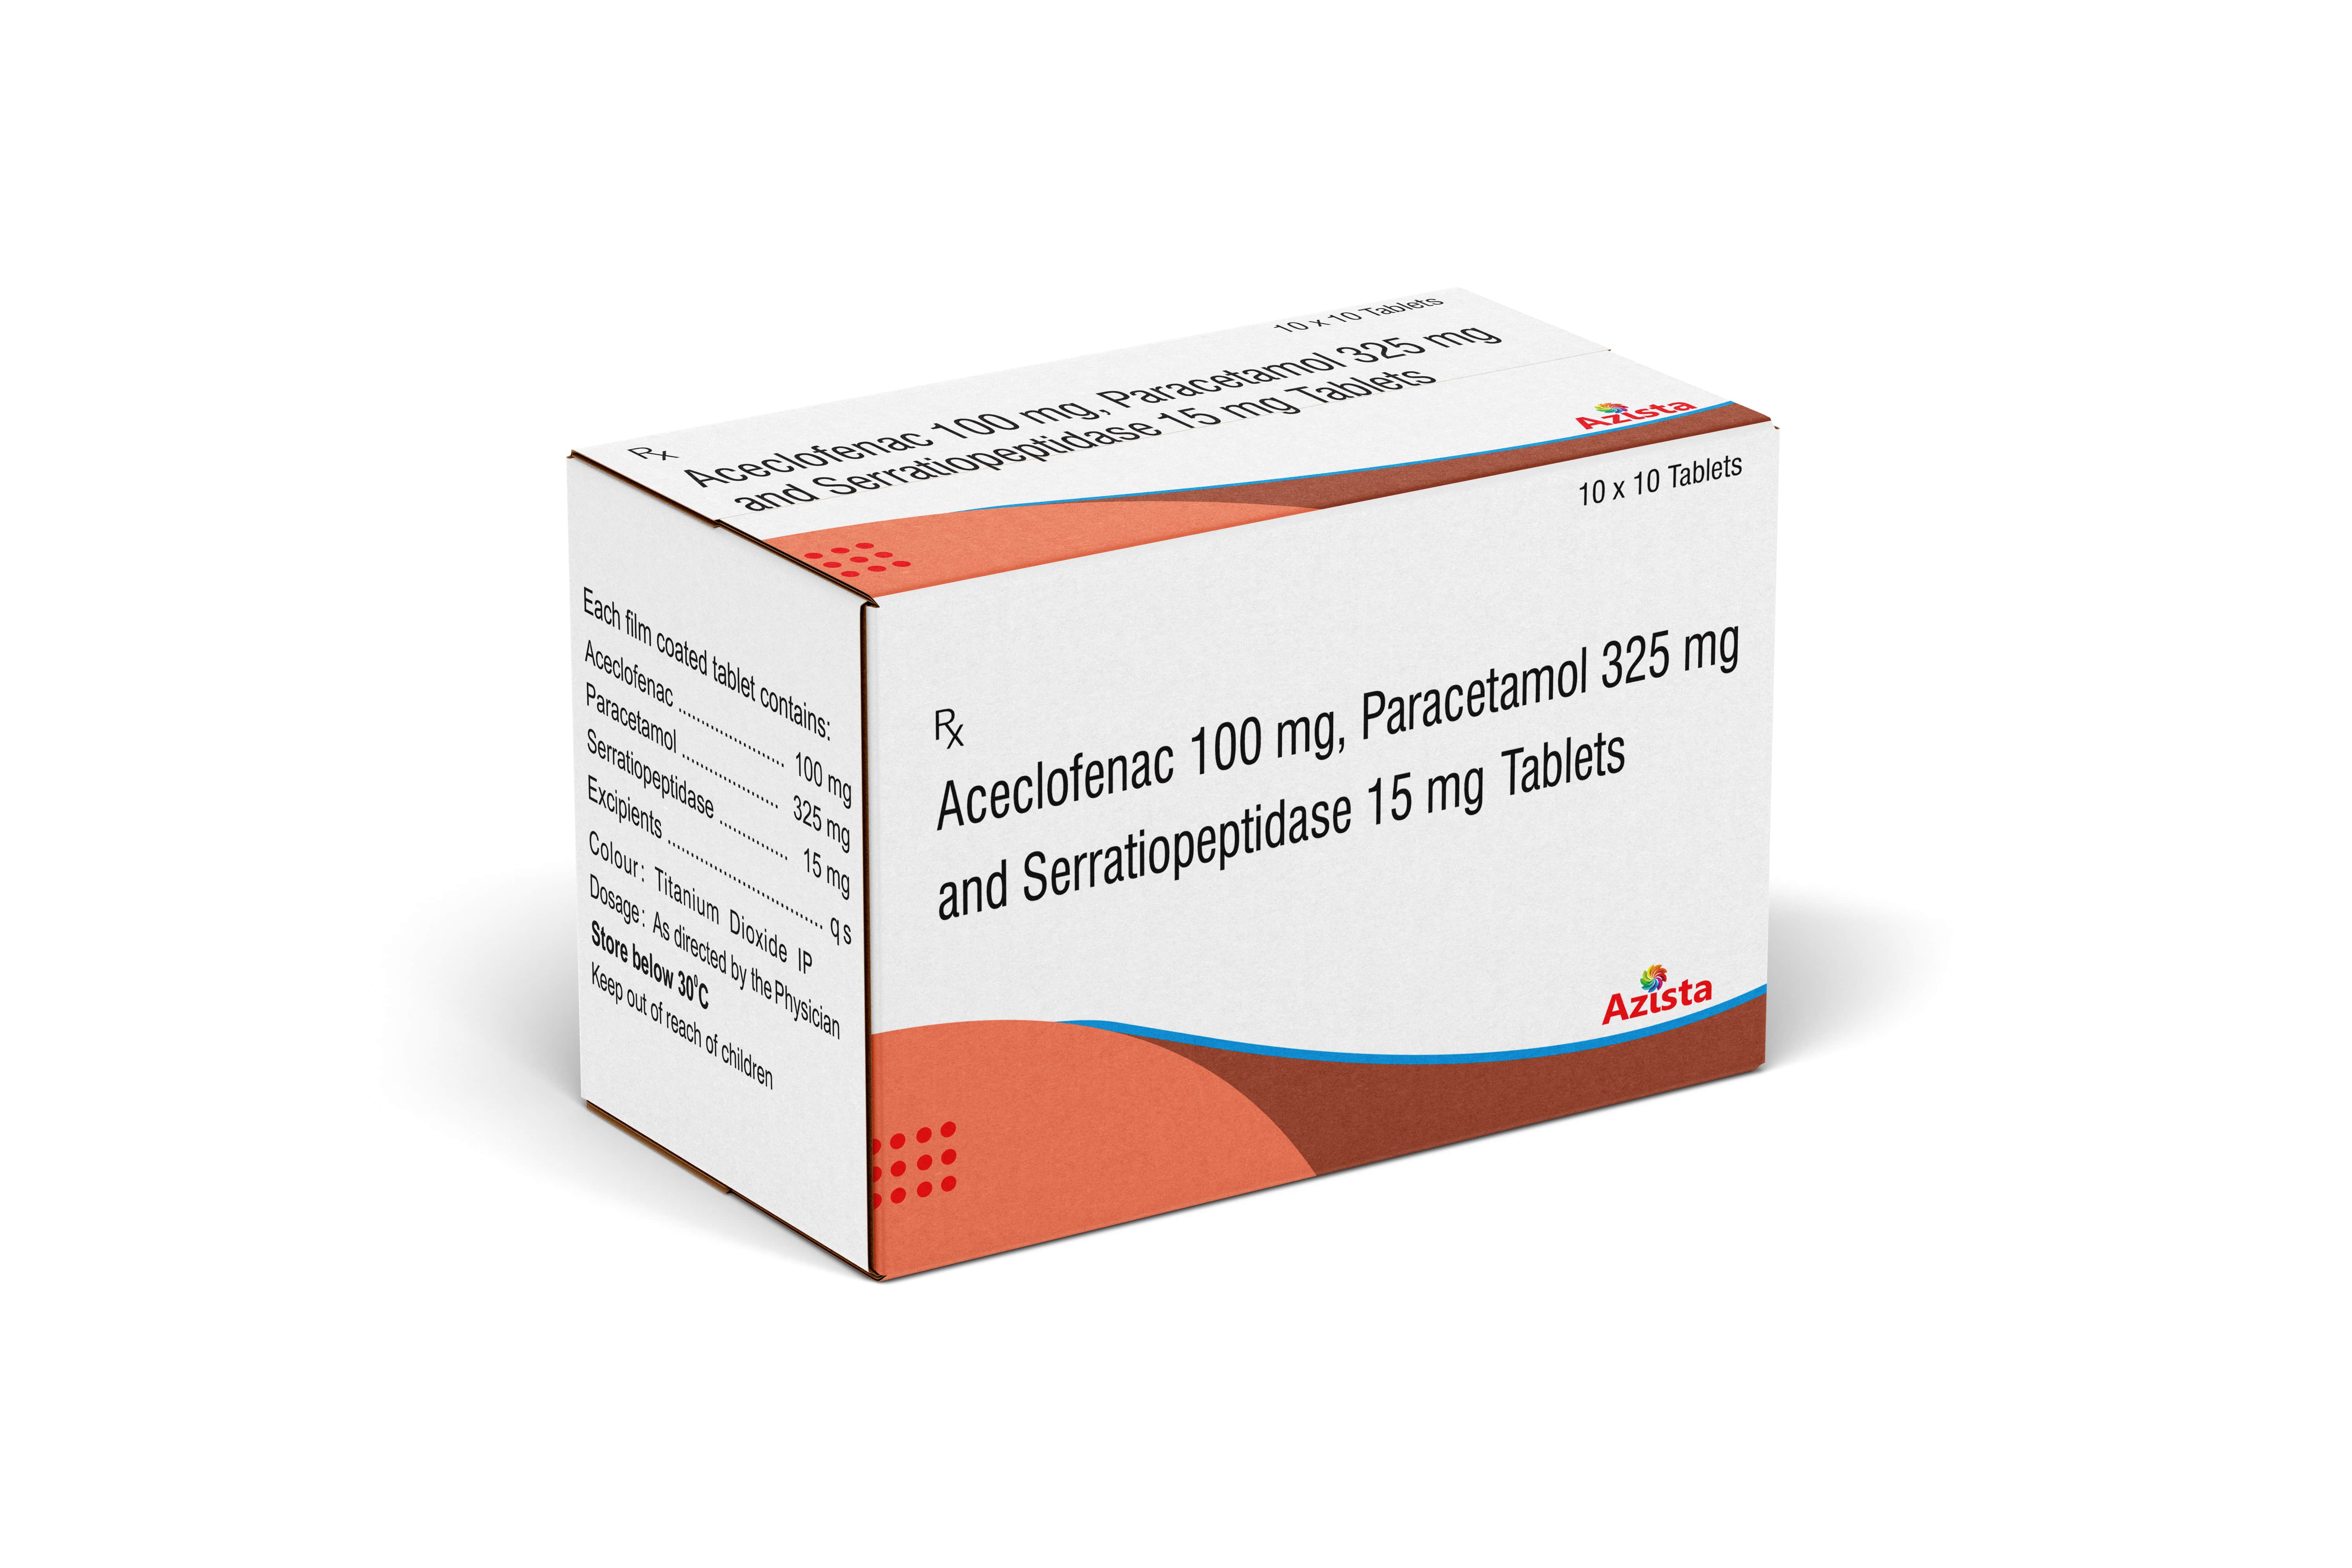 Aceclofenac 100mg and Paracetamol 325mg and  Serratiopeptidase 15mg